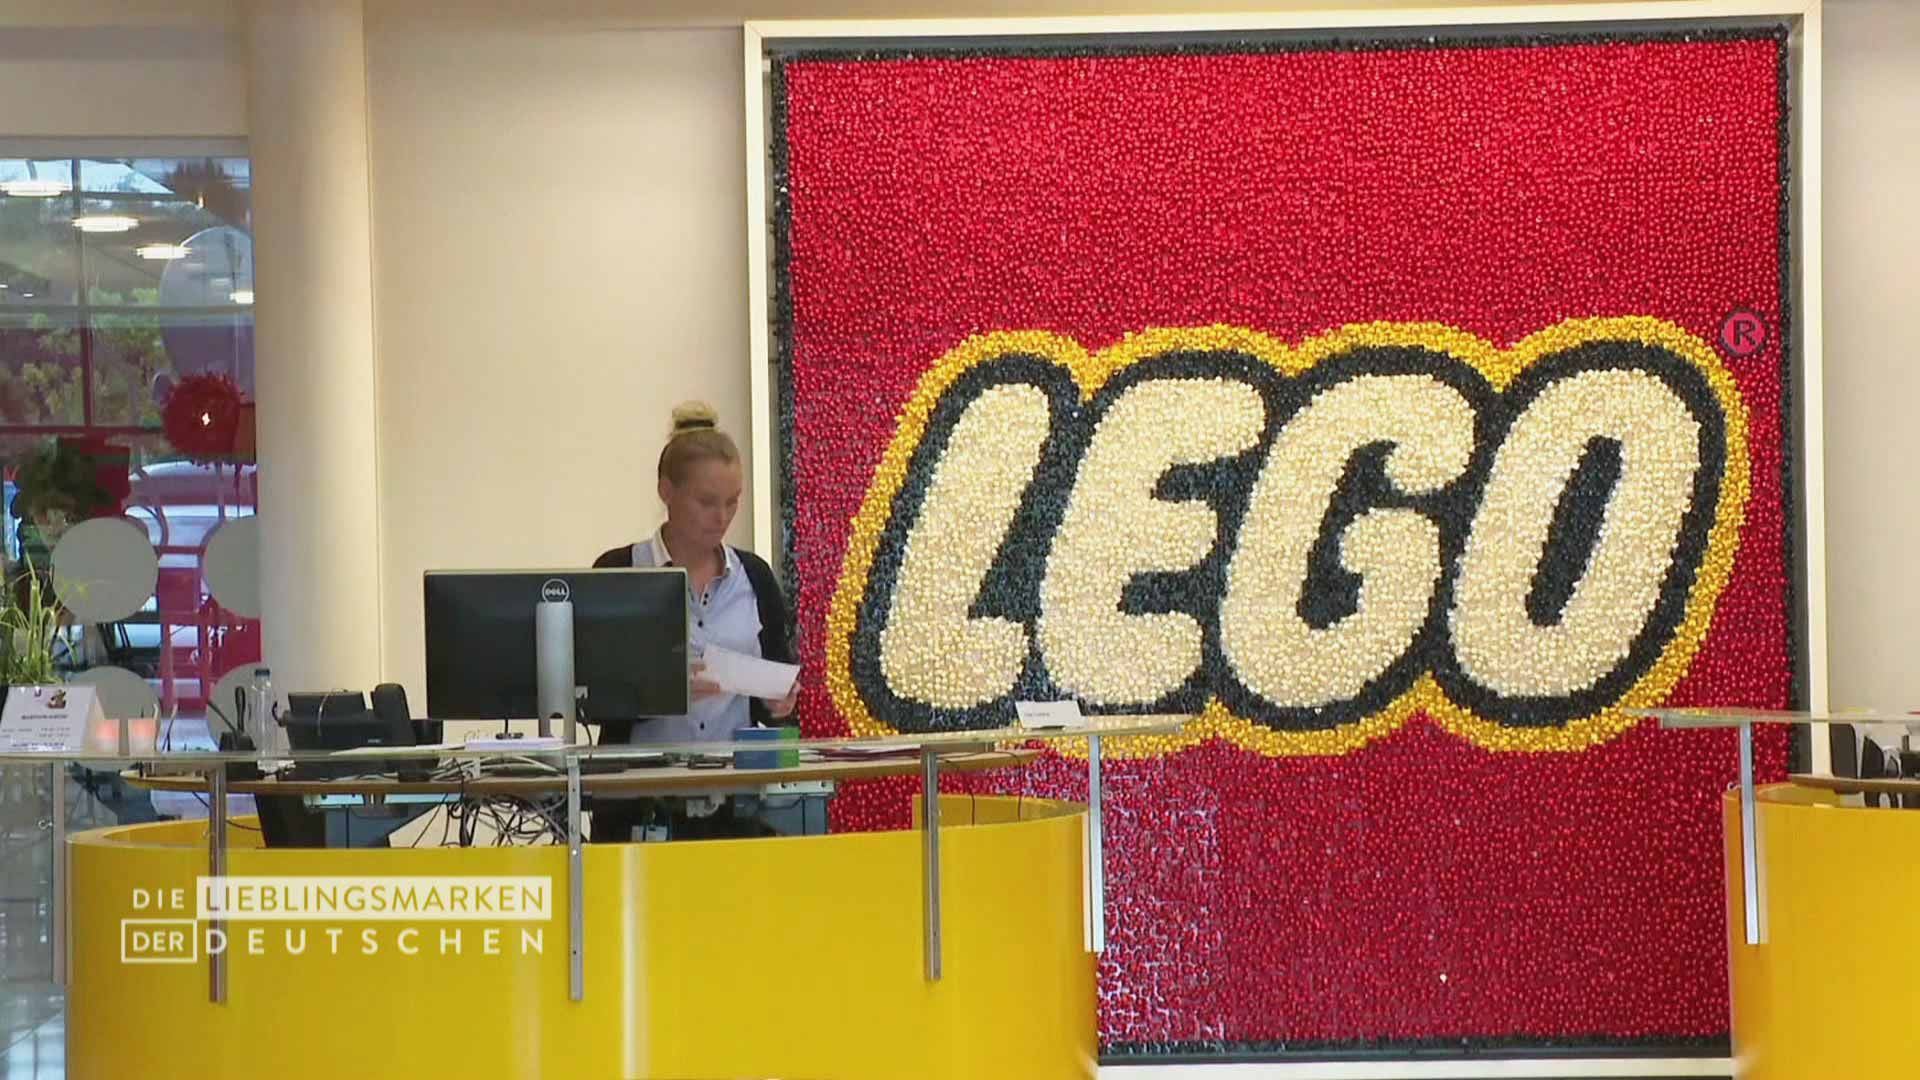 Die Lieblingsmarken der Deutschen - Lego